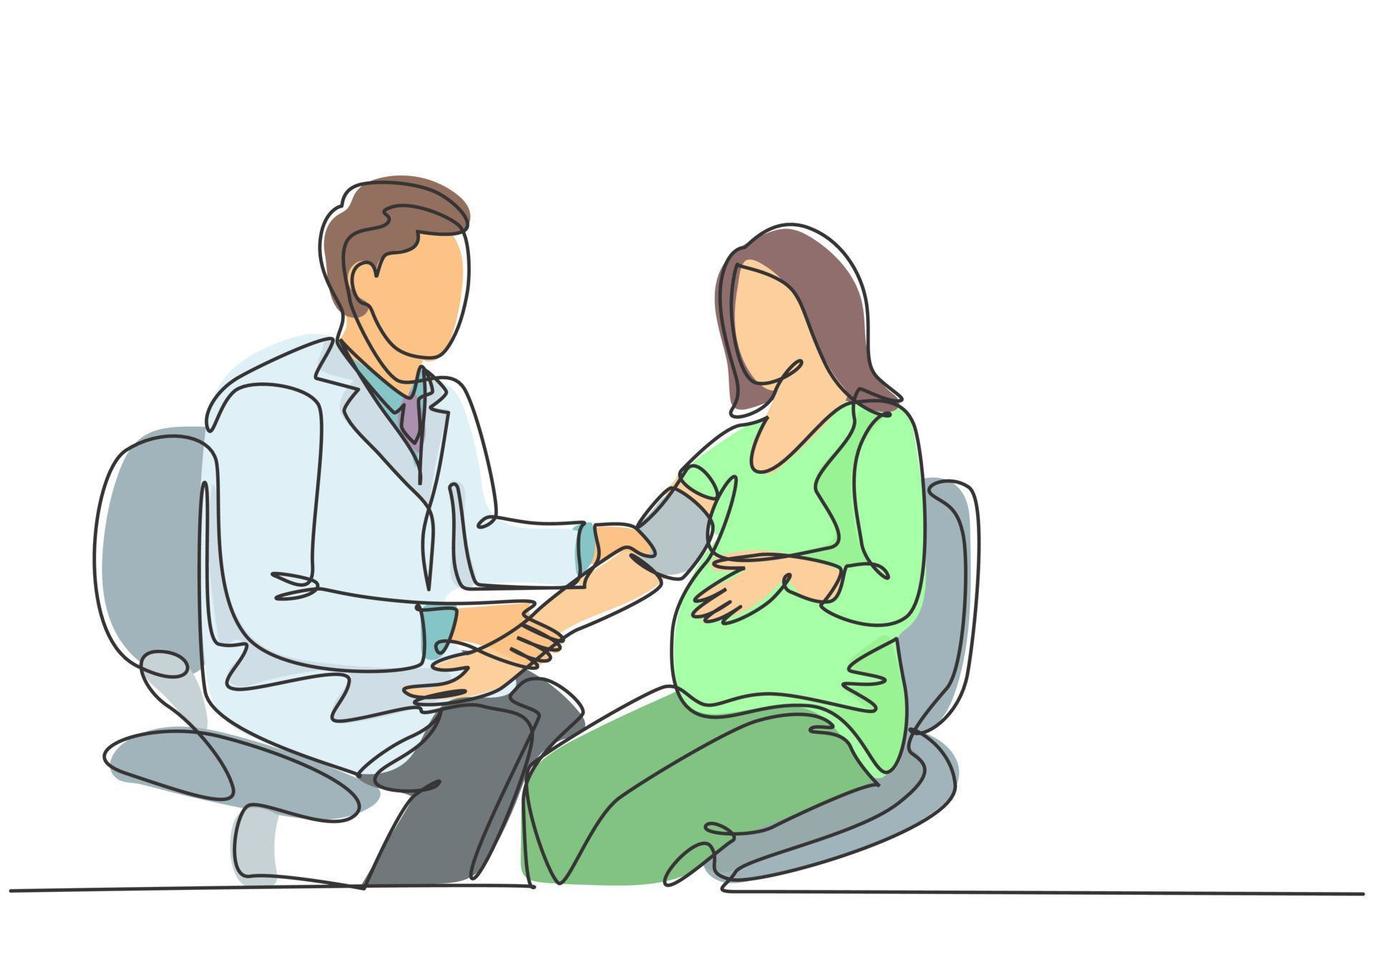 un unico disegno a tratteggio di un medico di ostetricia e ginecologia maschile che controlla la pressione sanguigna del paziente e le condizioni fetali. concetto di assistenza sanitaria in gravidanza linea continua disegnare disegno vettoriale illustrazione